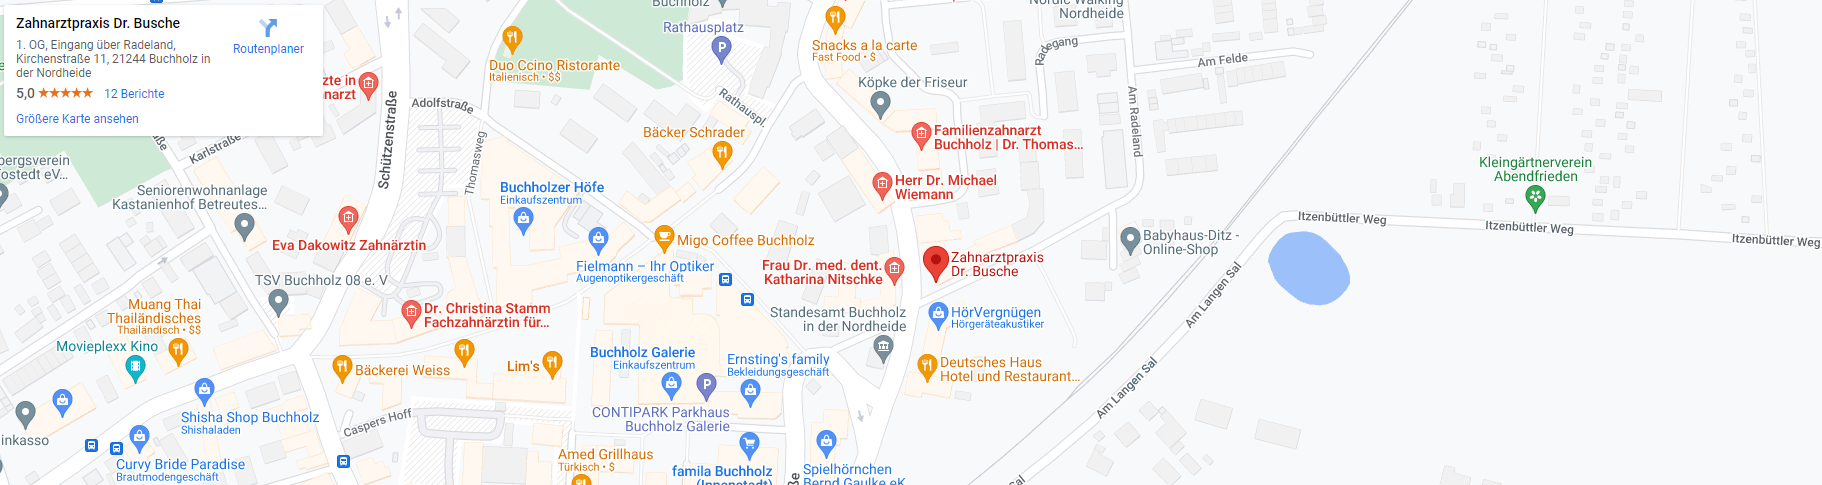 Karte-Google-Maps-Vorschau